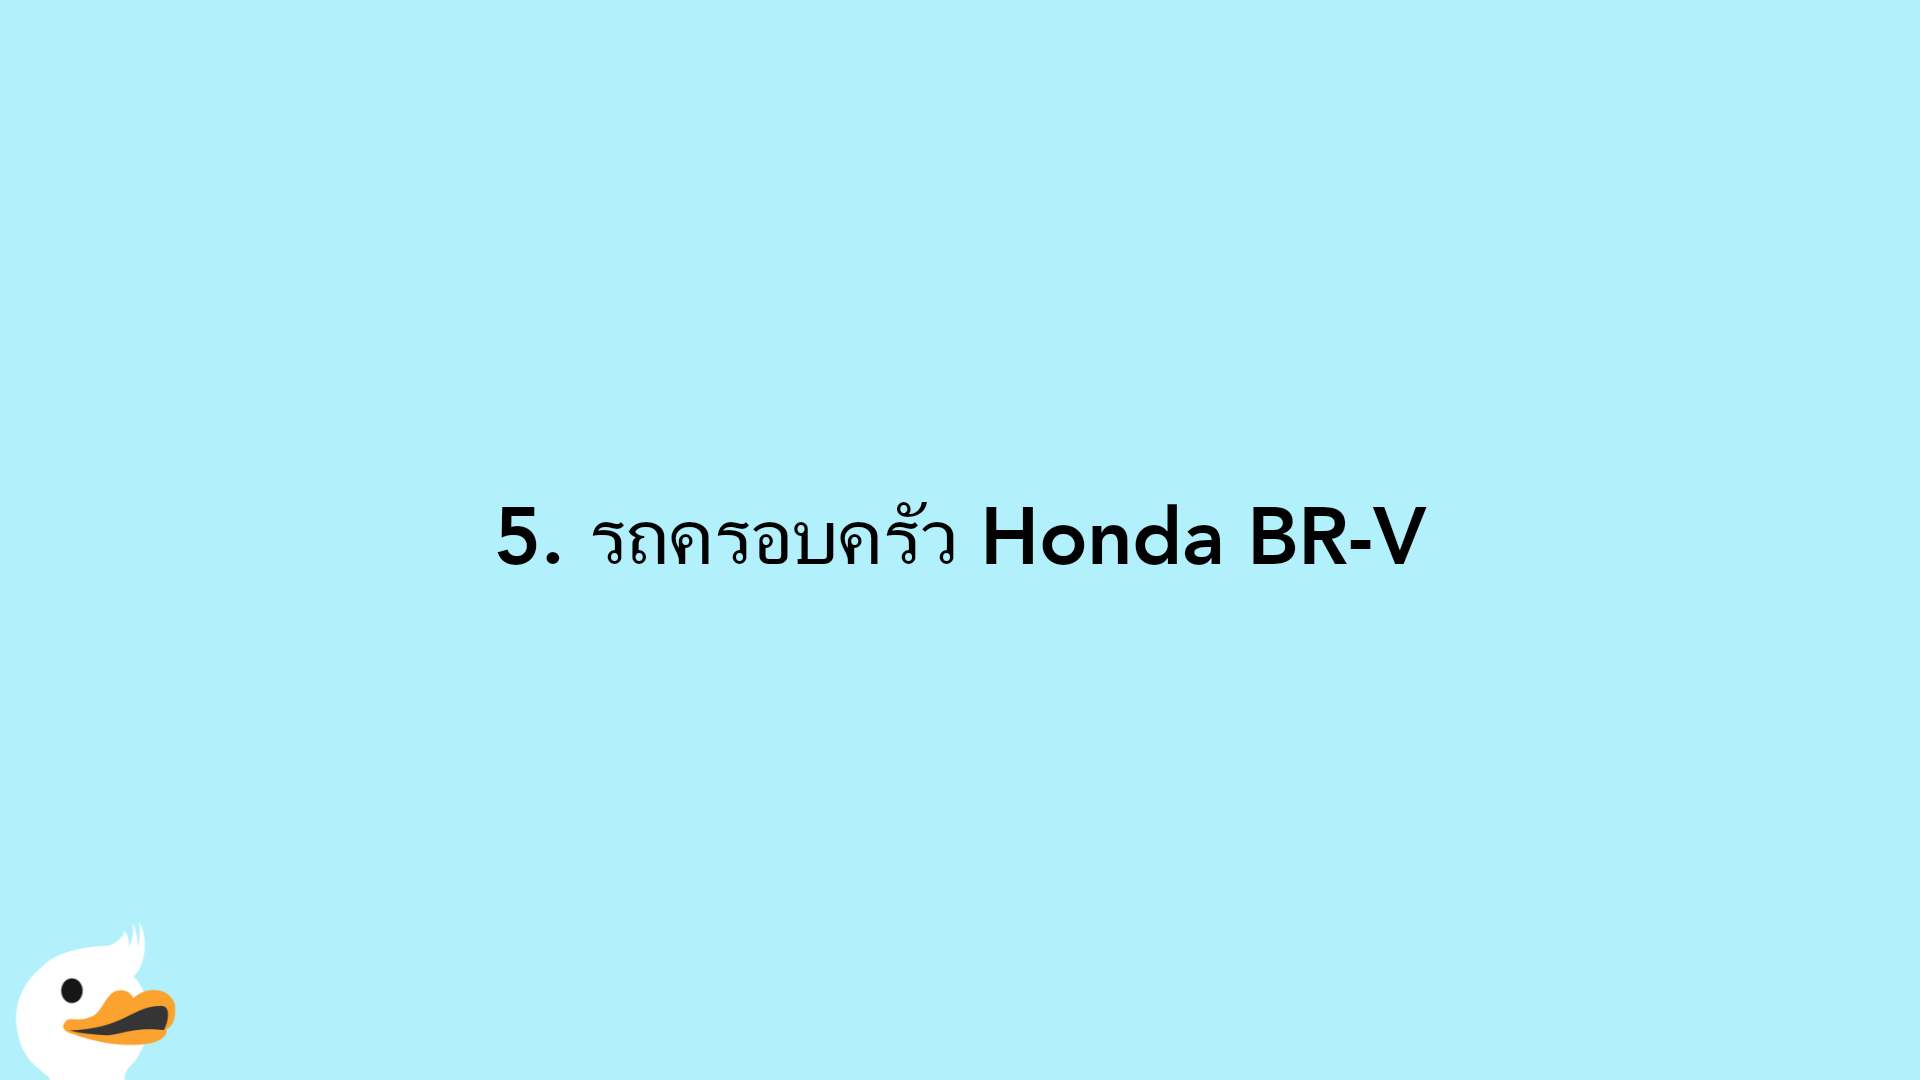 5. รถครอบครัว Honda BR-V